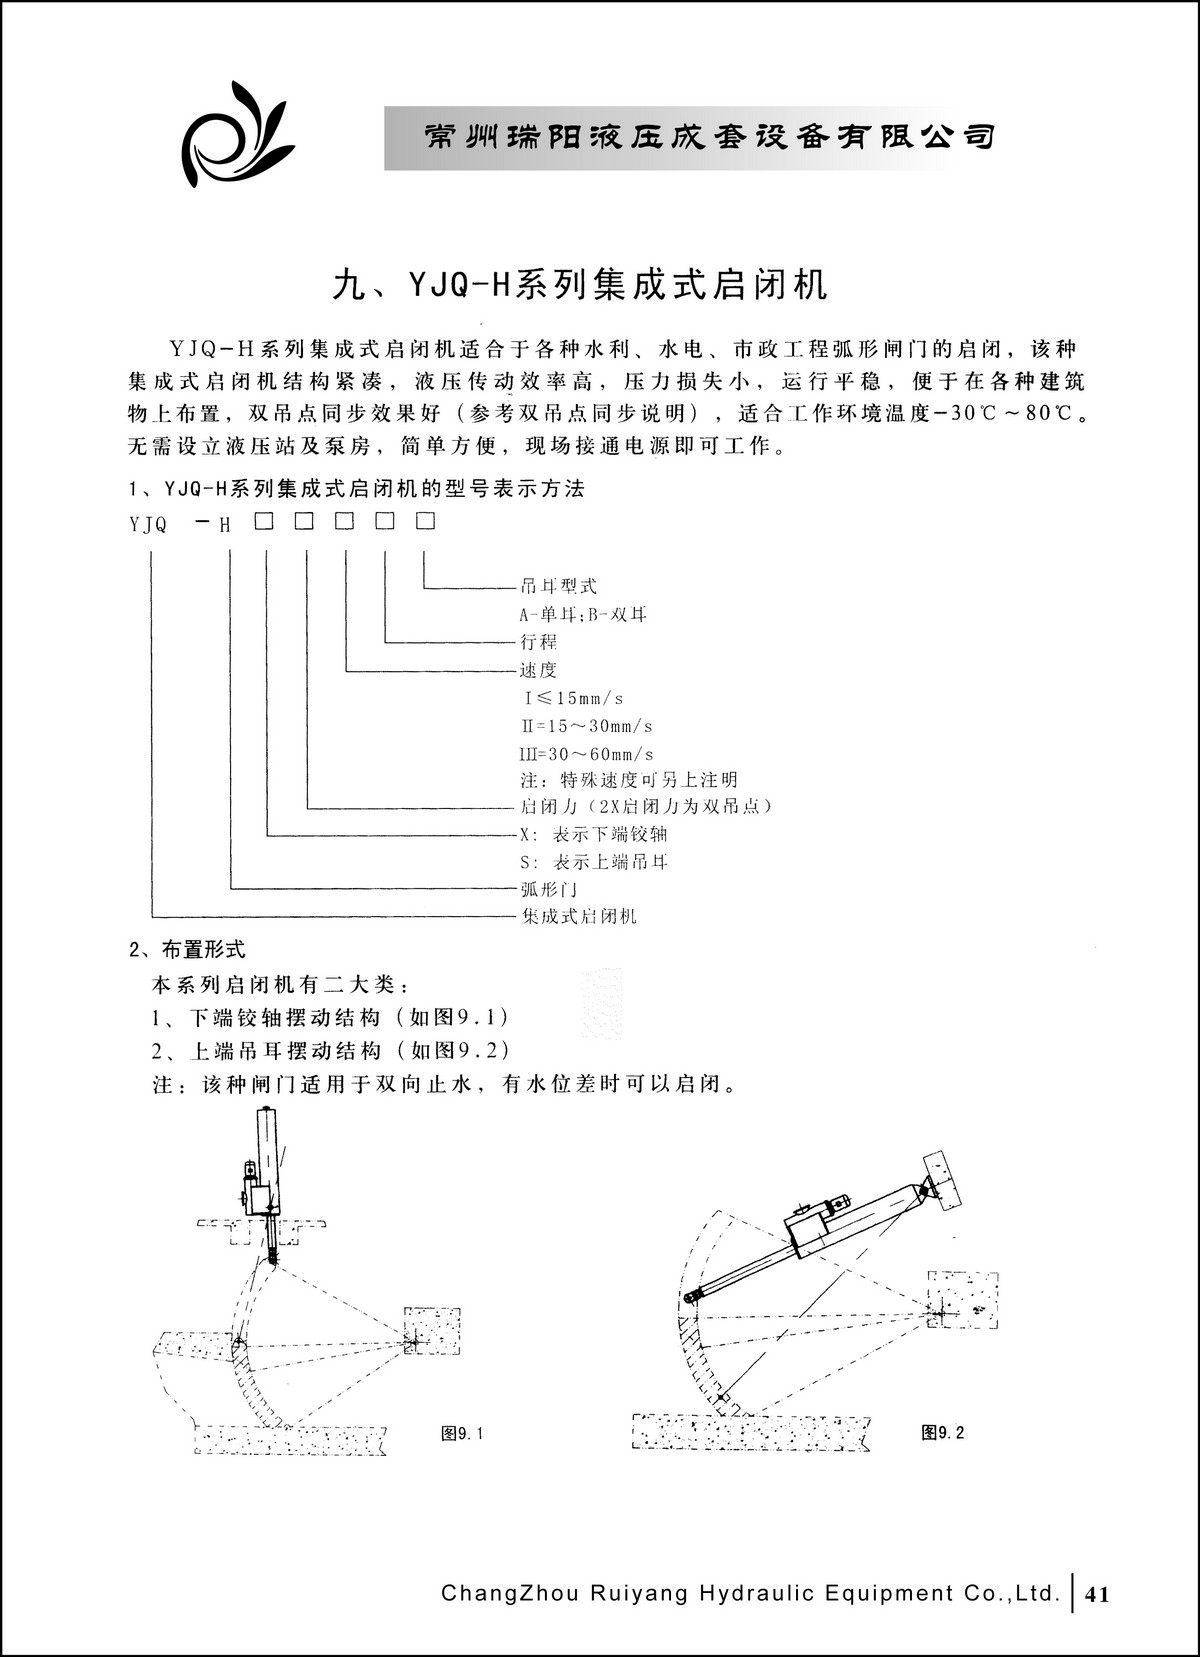 常州瑞阳液压成套设备有限公司产品样本2_页面_41.JPG